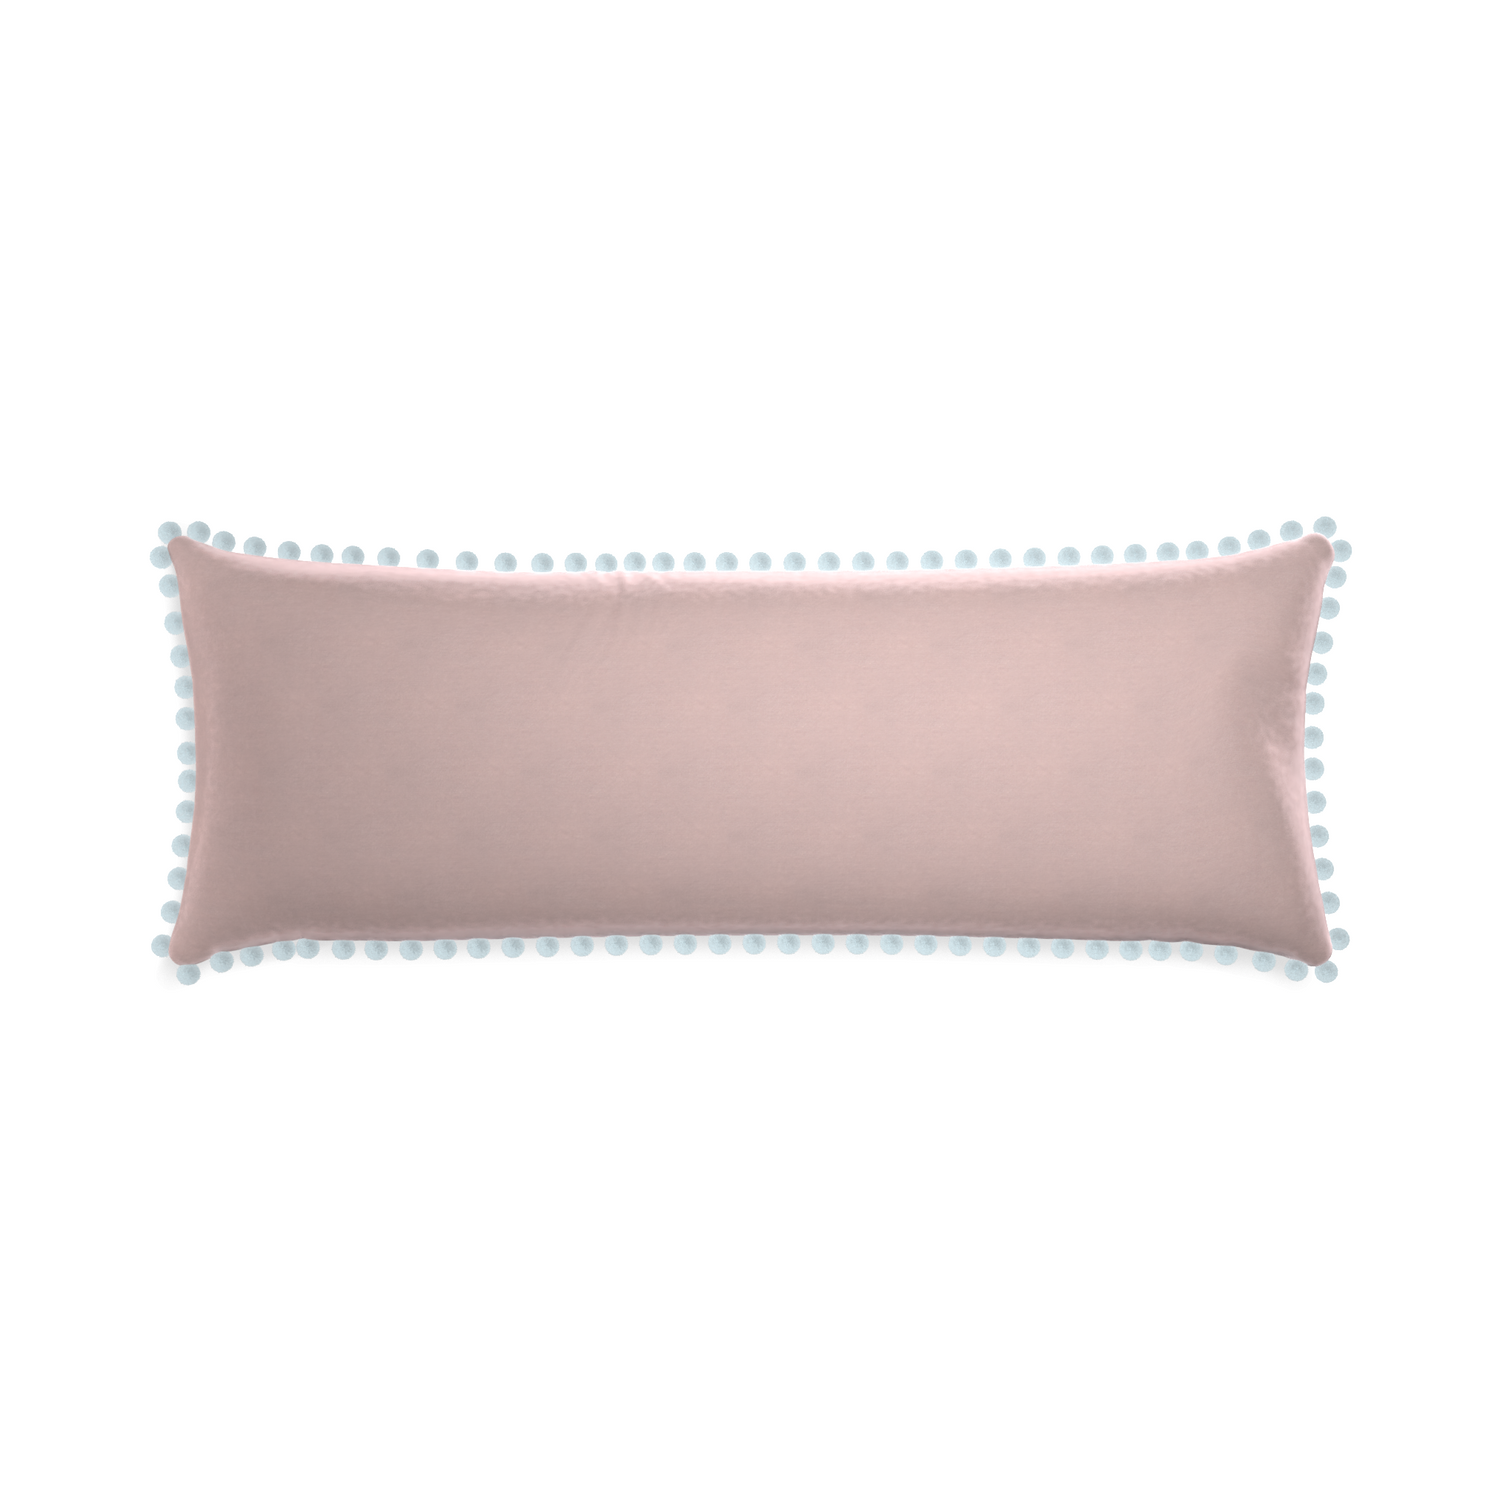 rectangle light pink velvet pillow with light blue pom poms